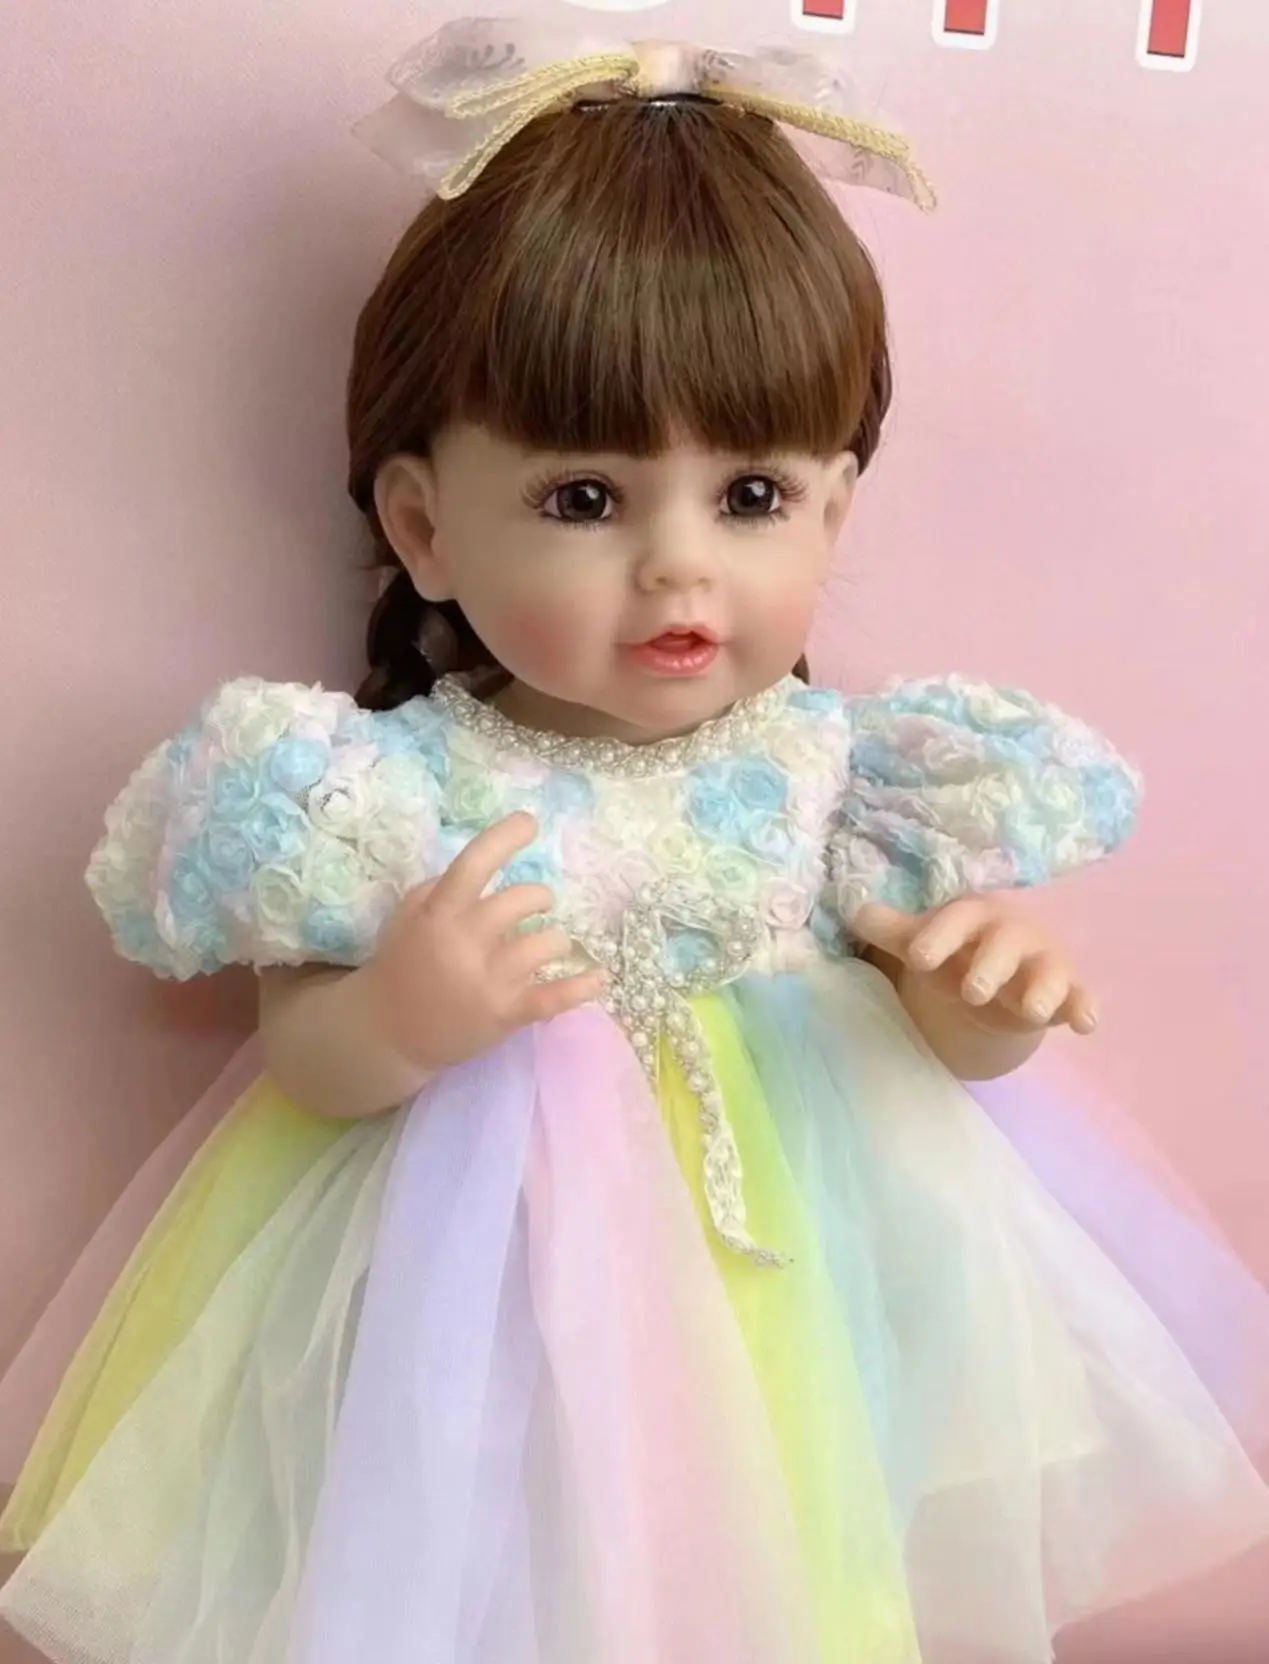 Подлинное Новое Платье Принцессы с длинными волосами, имитация Куклы, игрушка для душа и переодевания, подарок для девочки Изображение 0